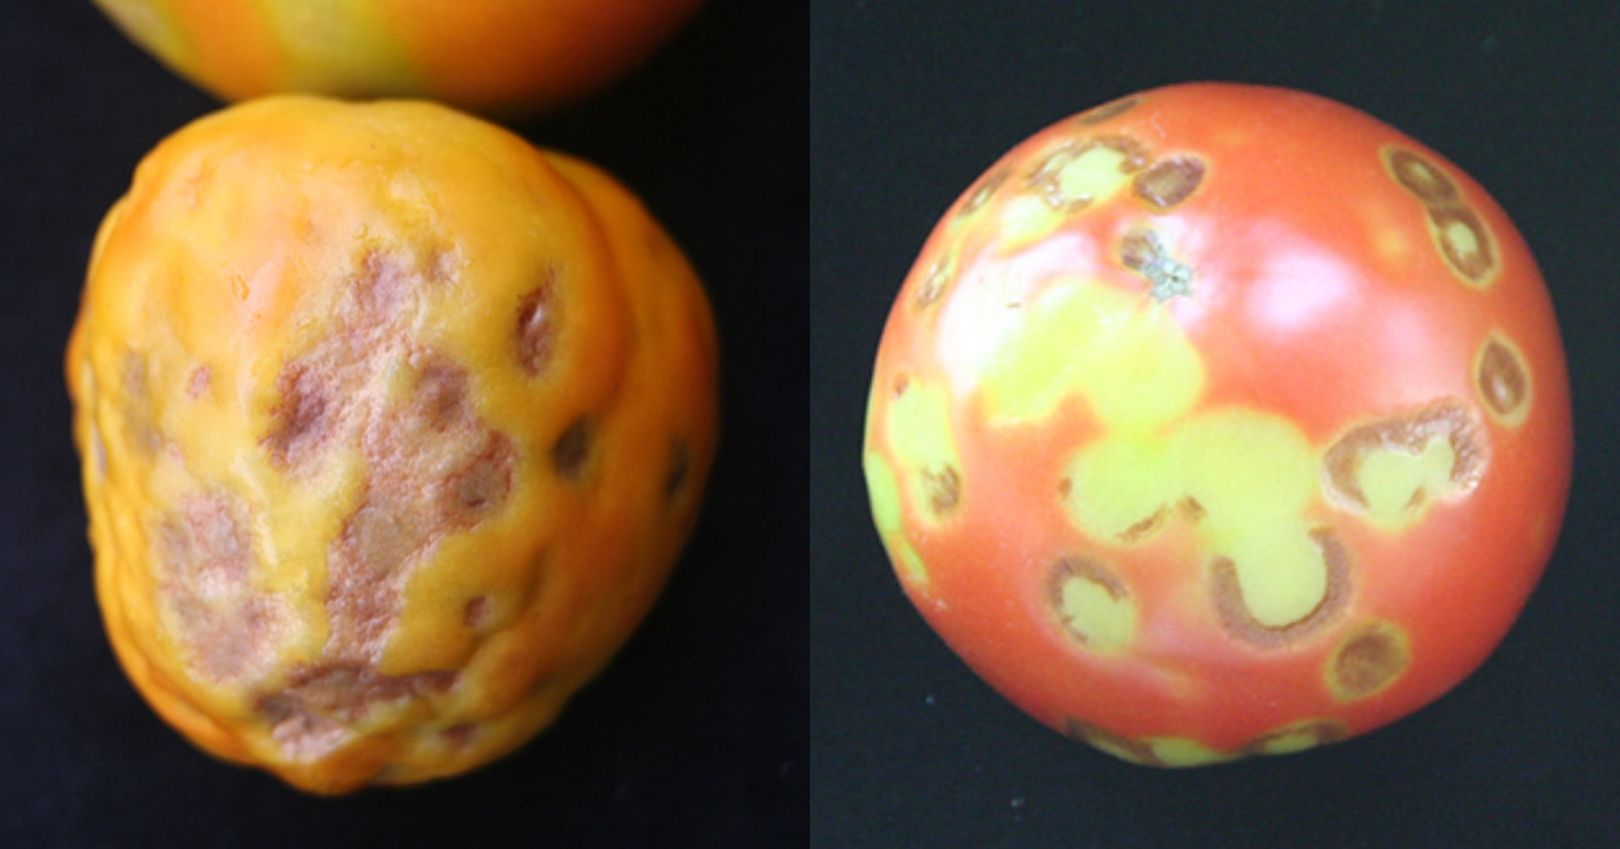 TMV Symptoms on Tomato Fruit